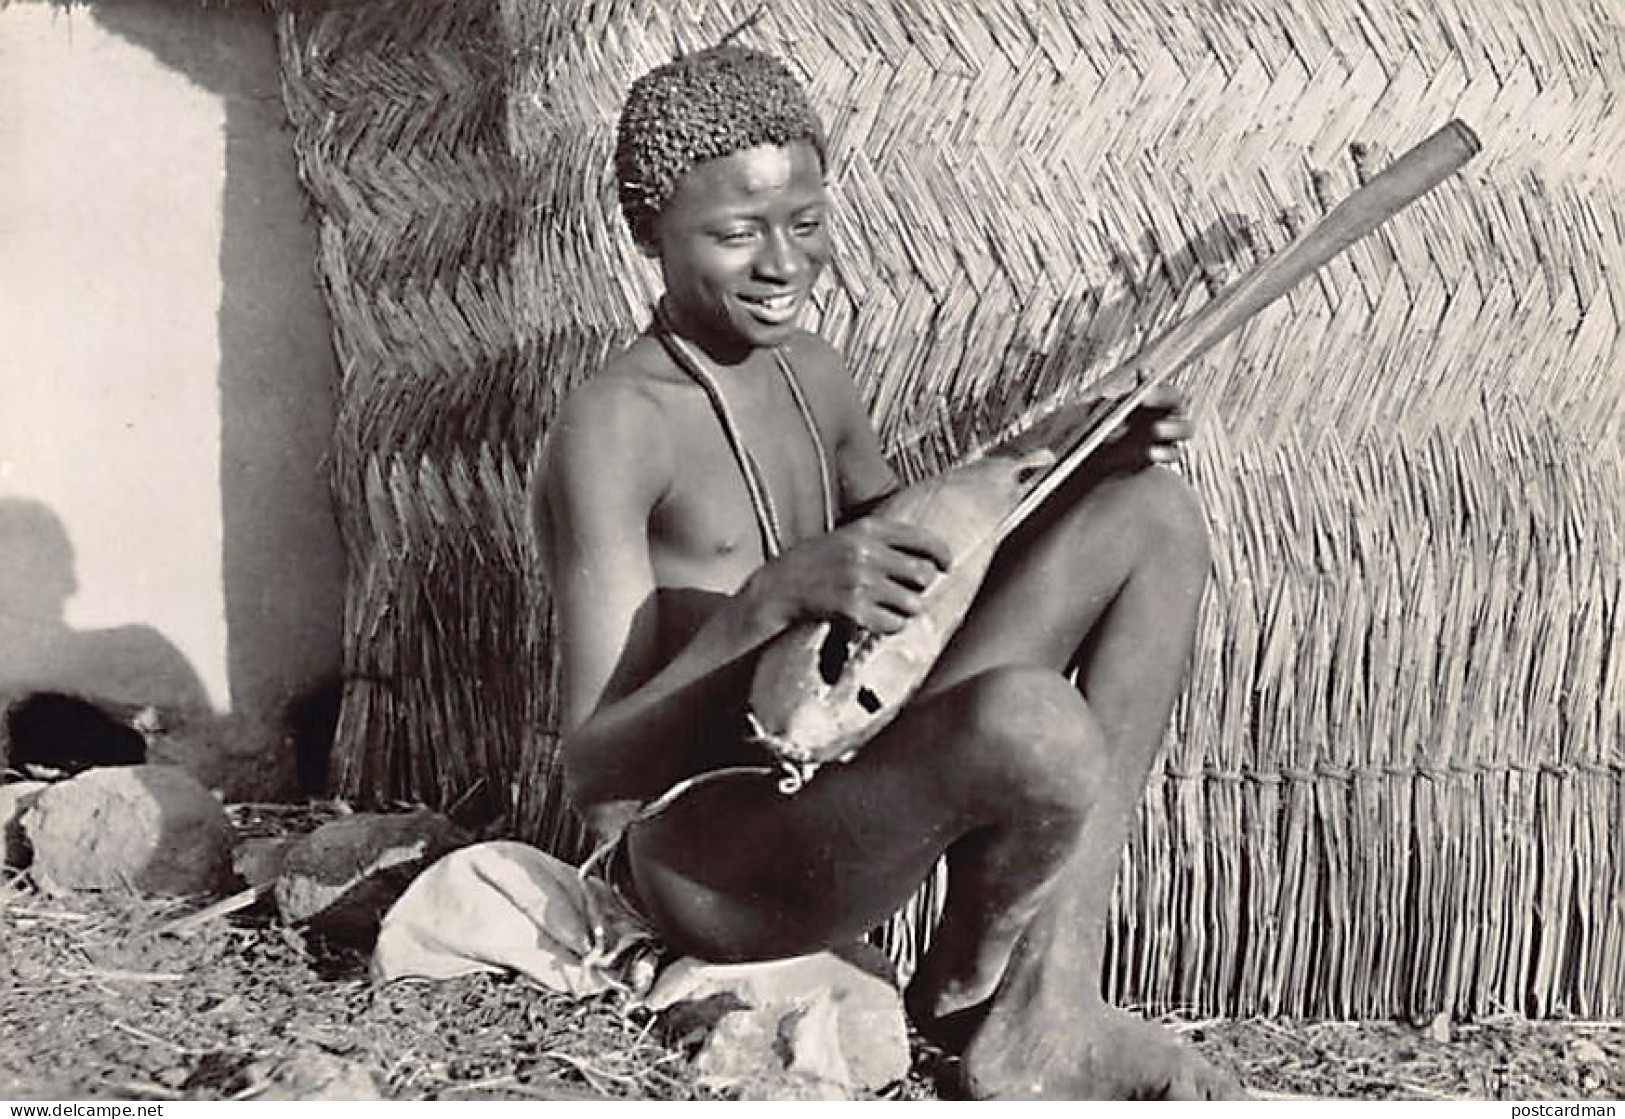 Cameroun - Musicien Fali - TAILLE DE LA CARTE POSTALE 15 Cm. Par 10 Cm. - POSTCARD SIZE 15 Cm. By 10 Cm. (5.9 In By 3.9  - Cameroon